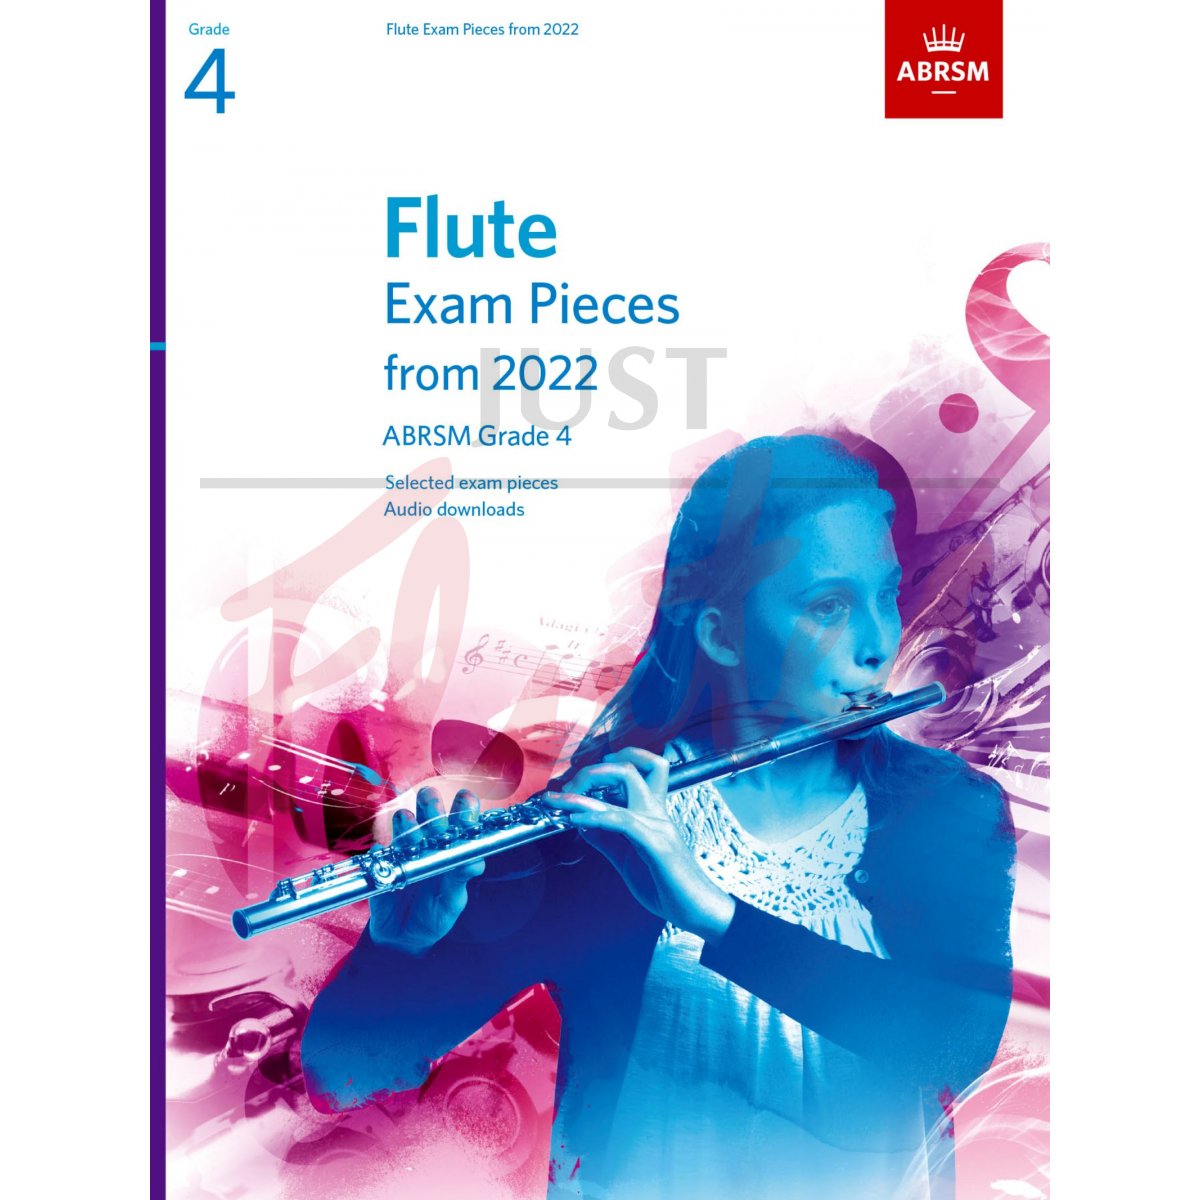 Flute Exam Pieces from 2022 Grade 4